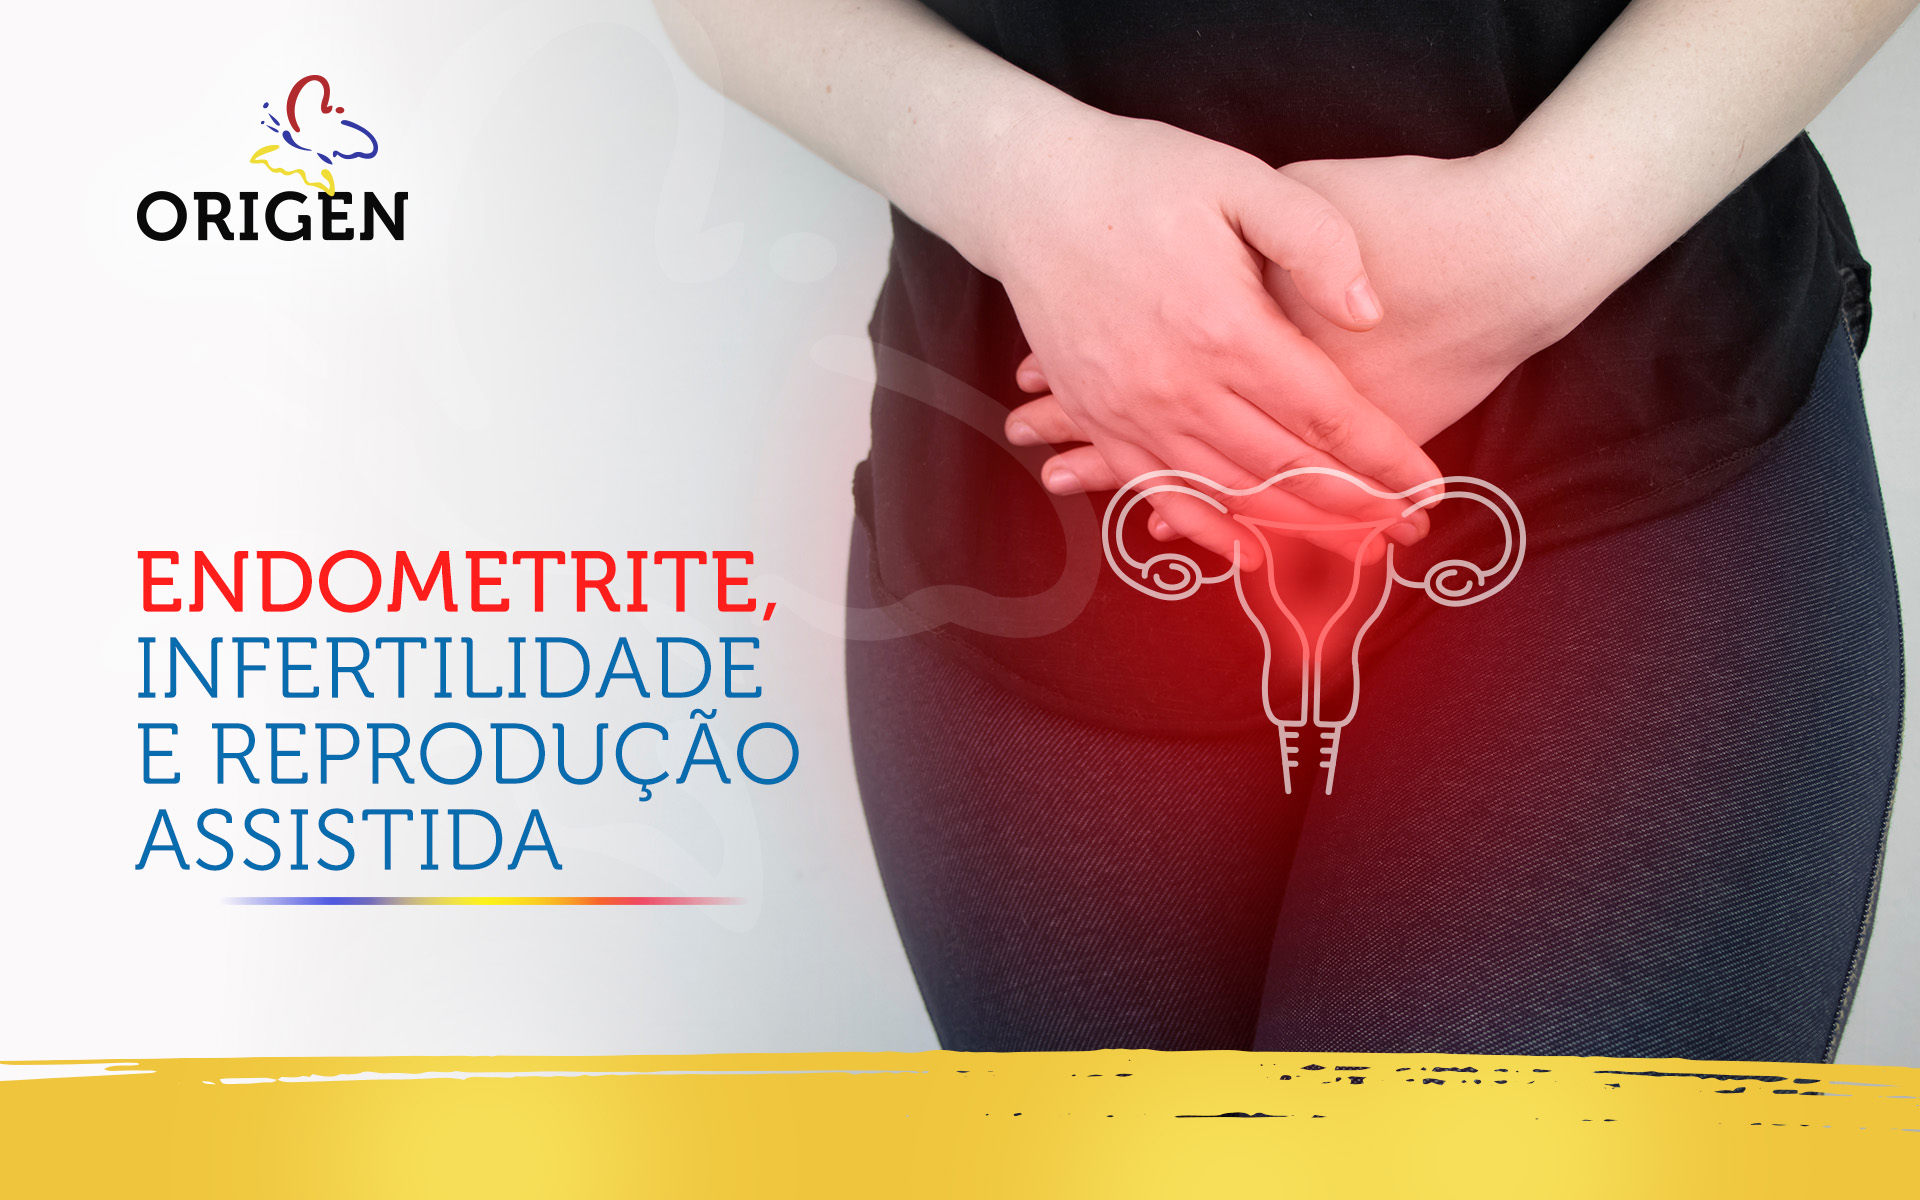 Endometrite, infertilidade e reprodução assistida